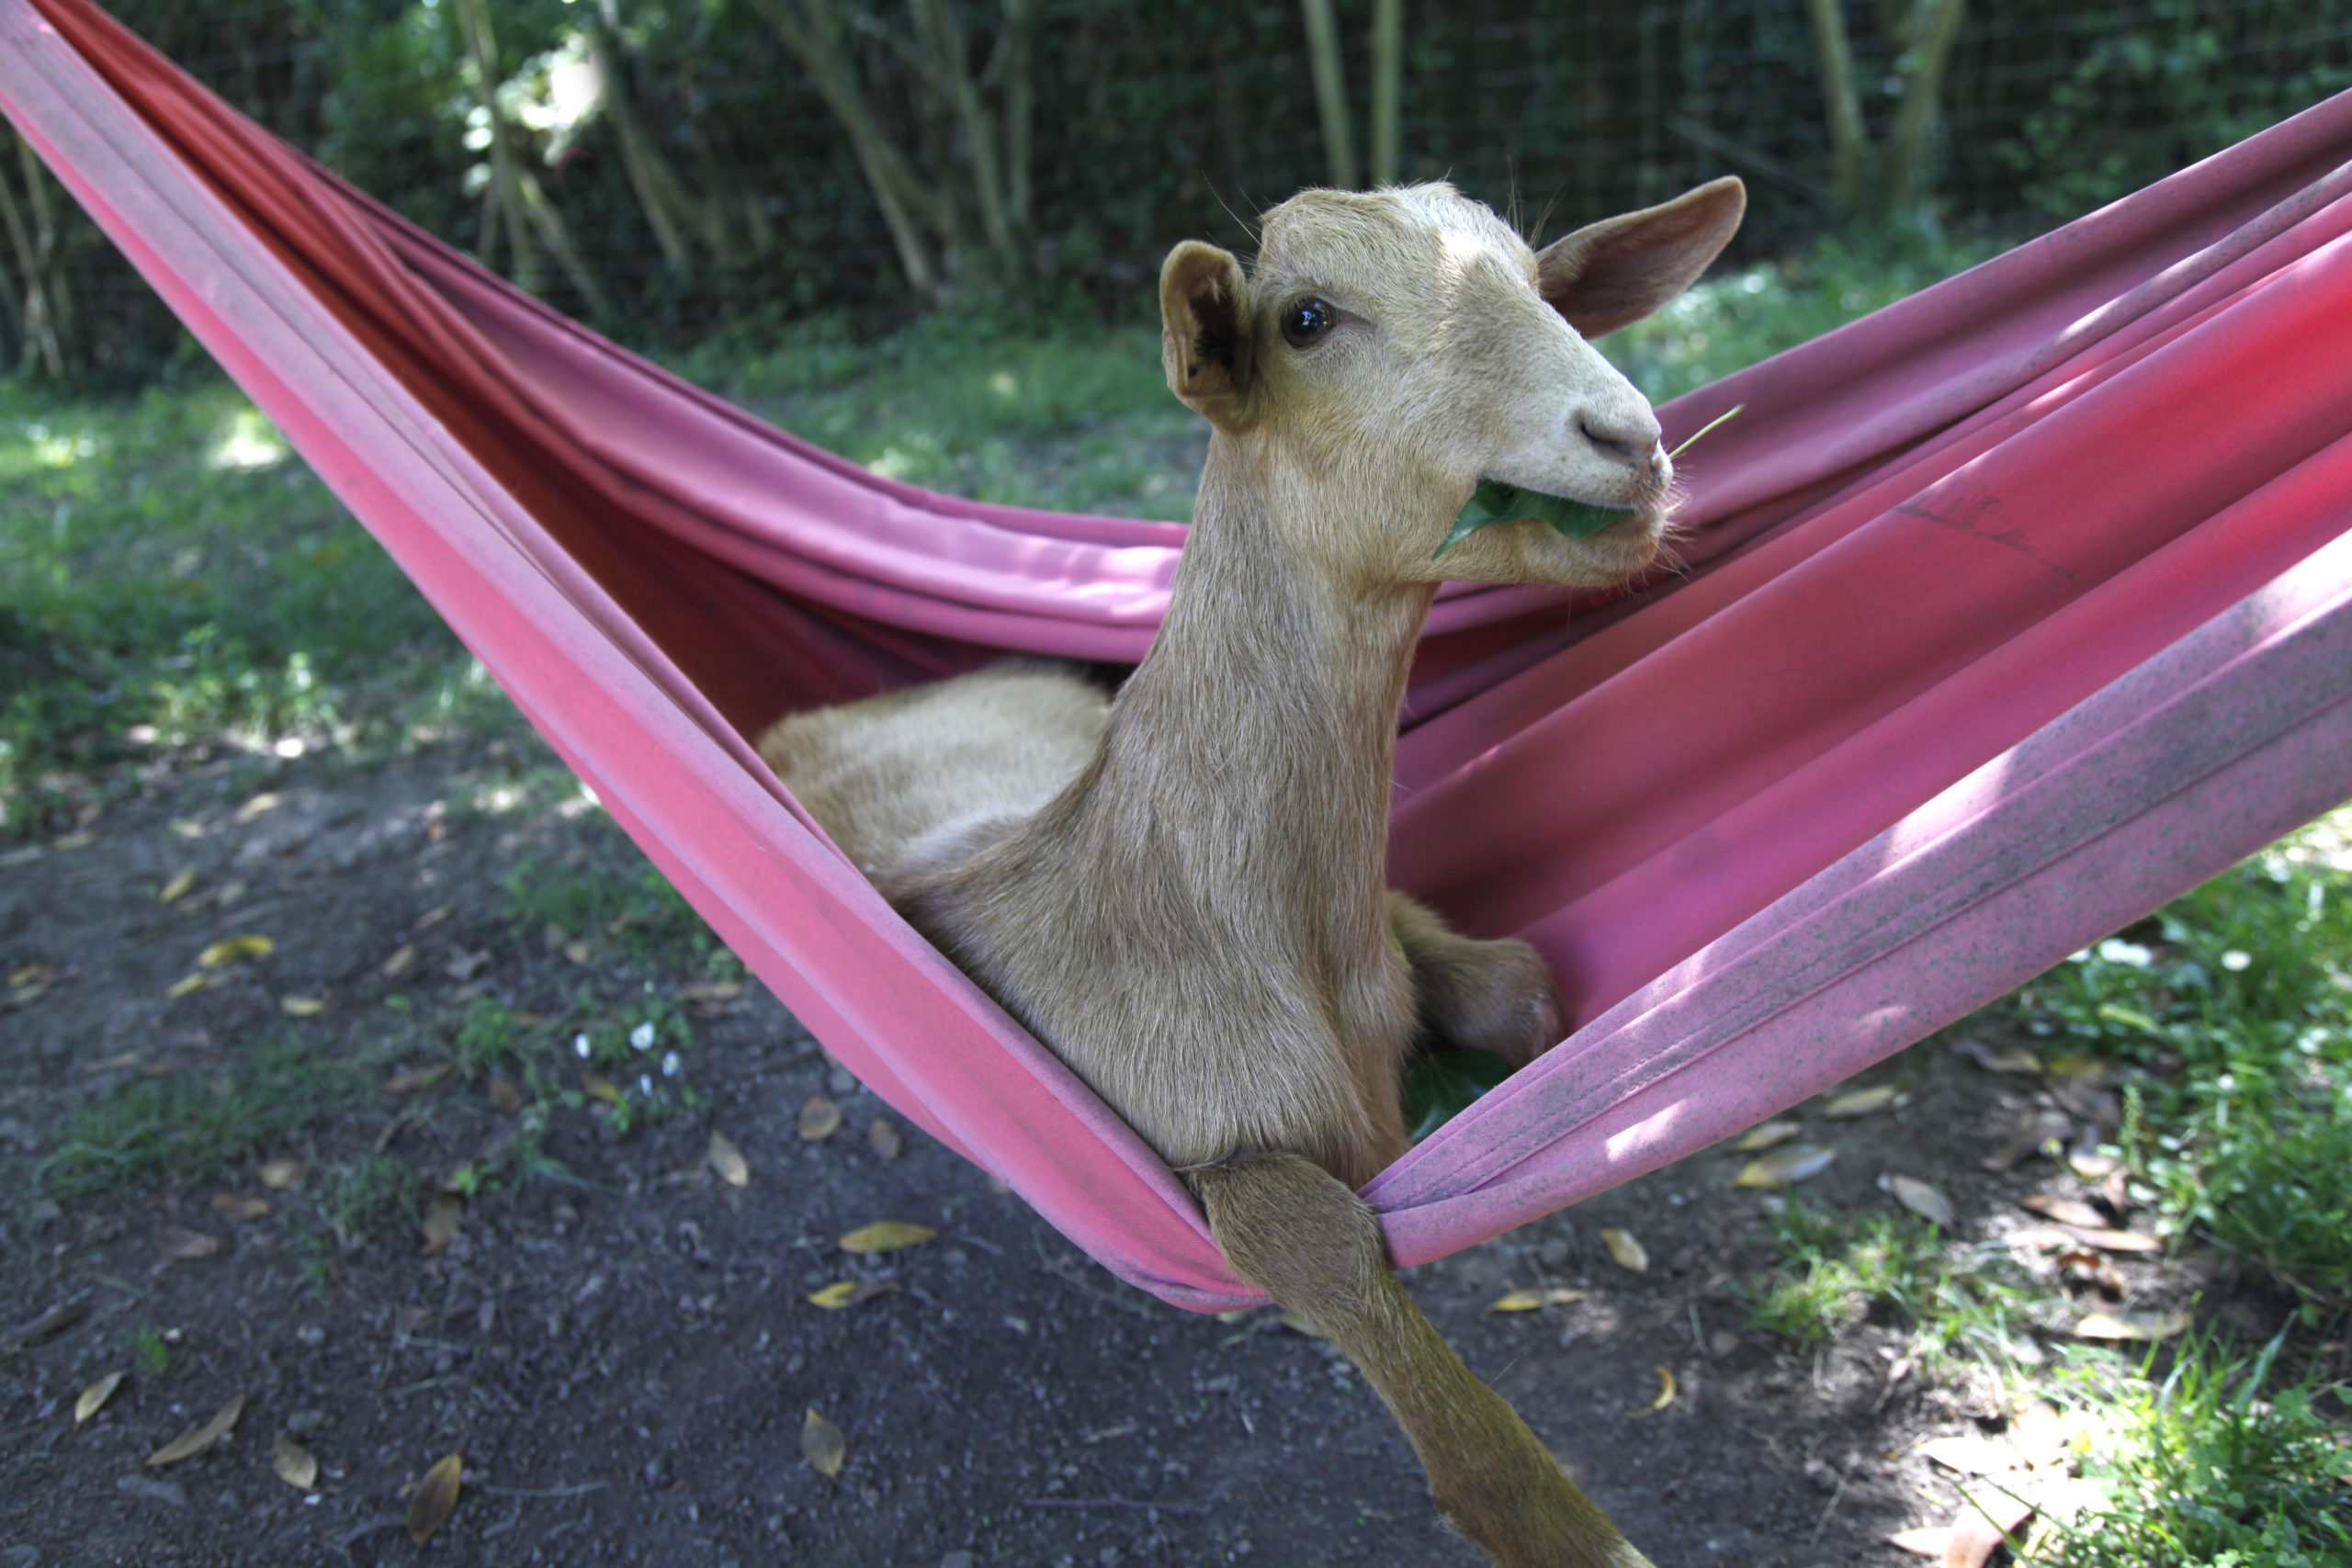 Fotografija 'Goat relax time' fotografa Roberta Prata snimljena u Španjolskoj. 